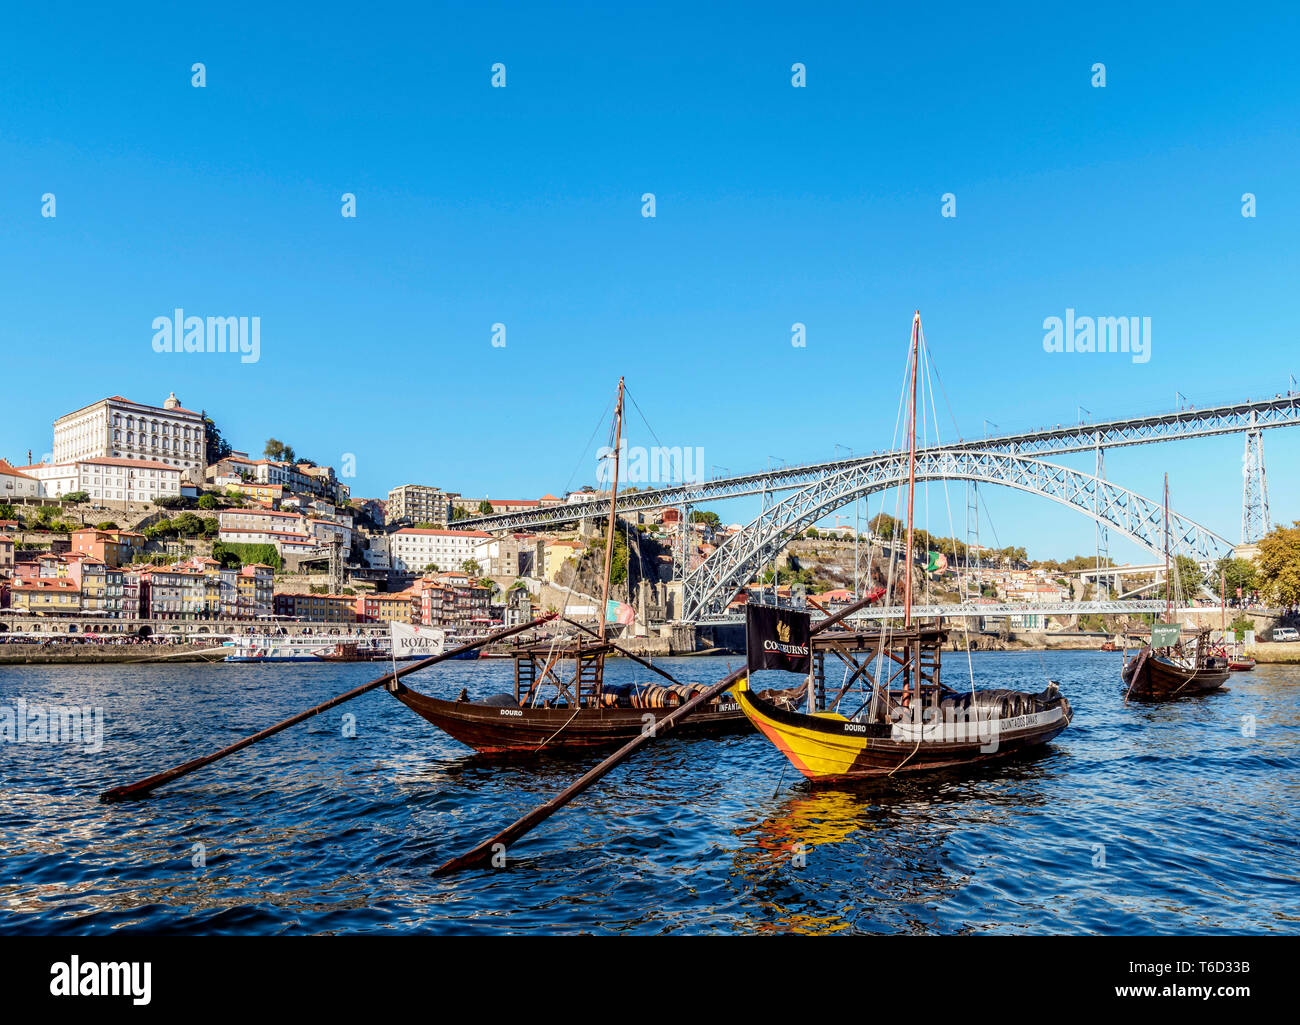 Le imbarcazioni tradizionali a Vila Nova de Gaia banca del fiume Douro, Dom Luis I Bridge in background, Porto, Portogallo Foto Stock